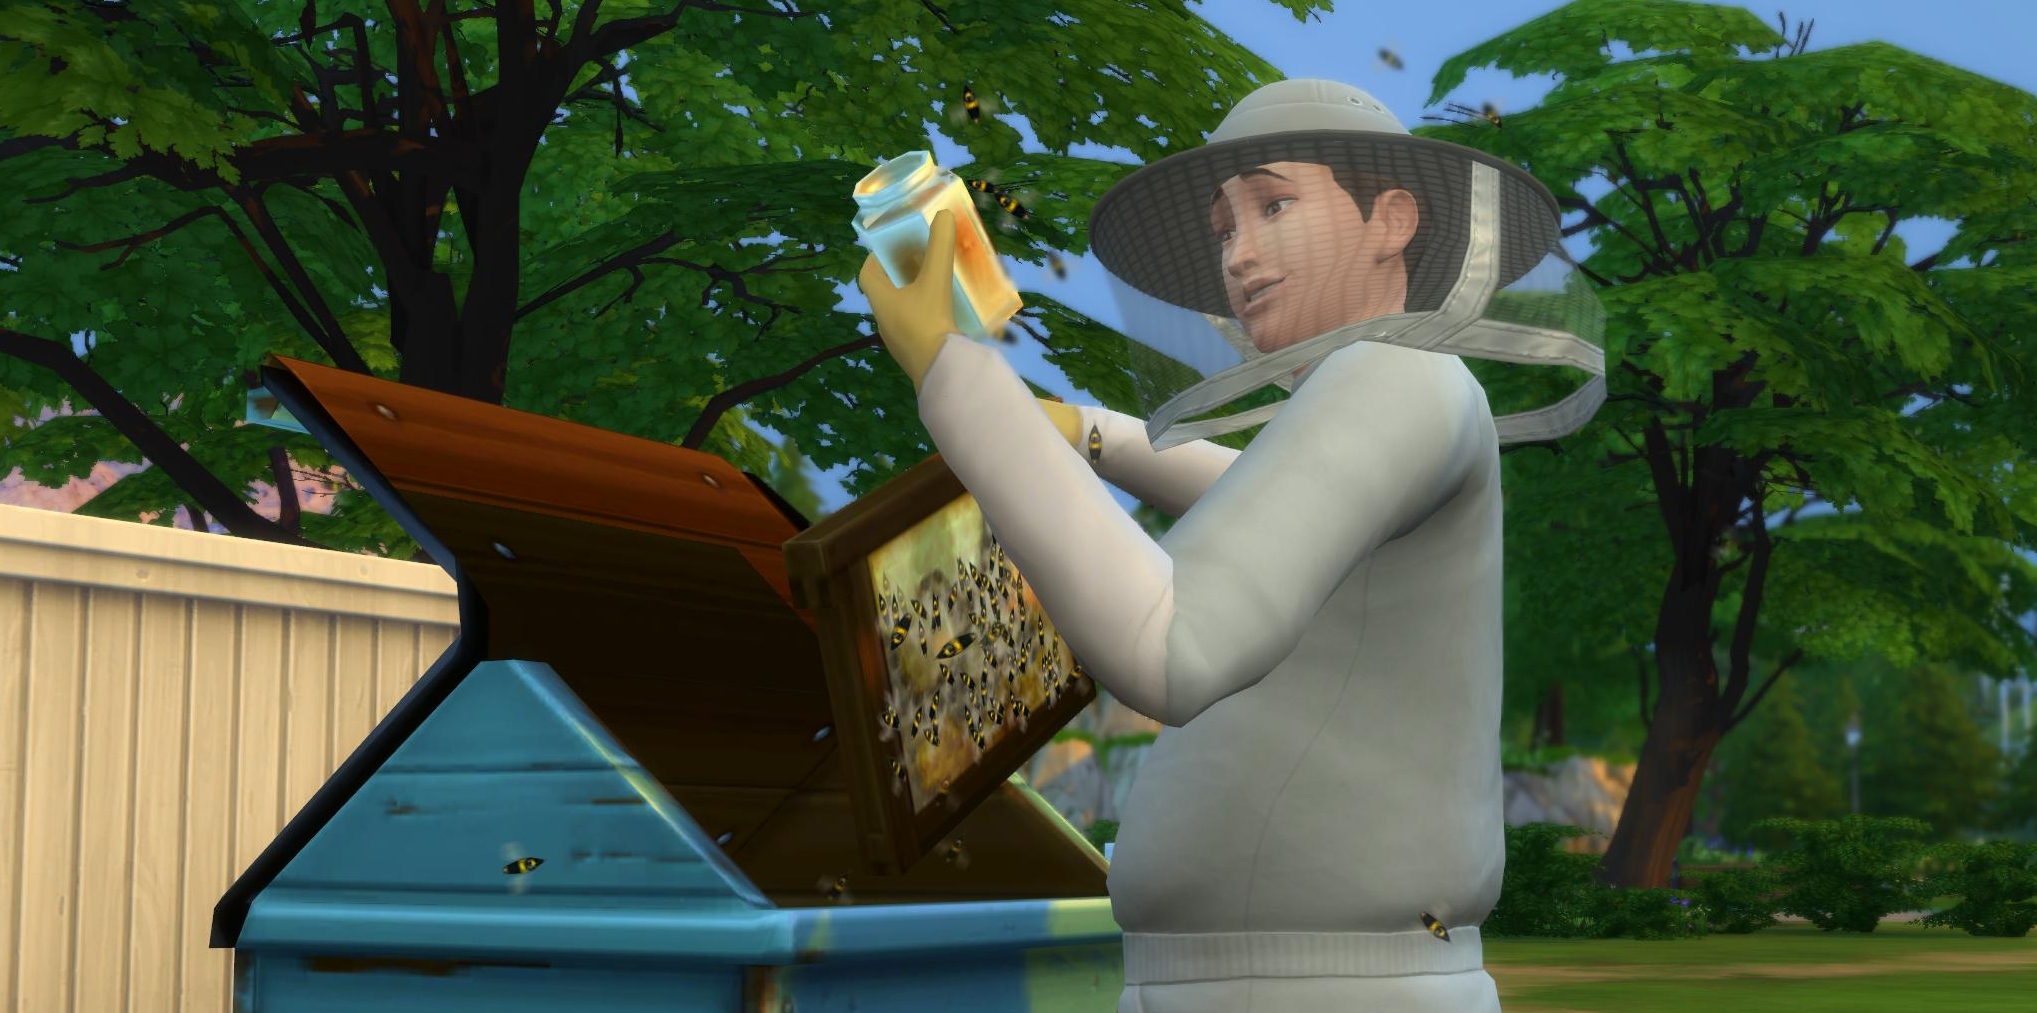 «The Sims 4: Времена года»: что нового?